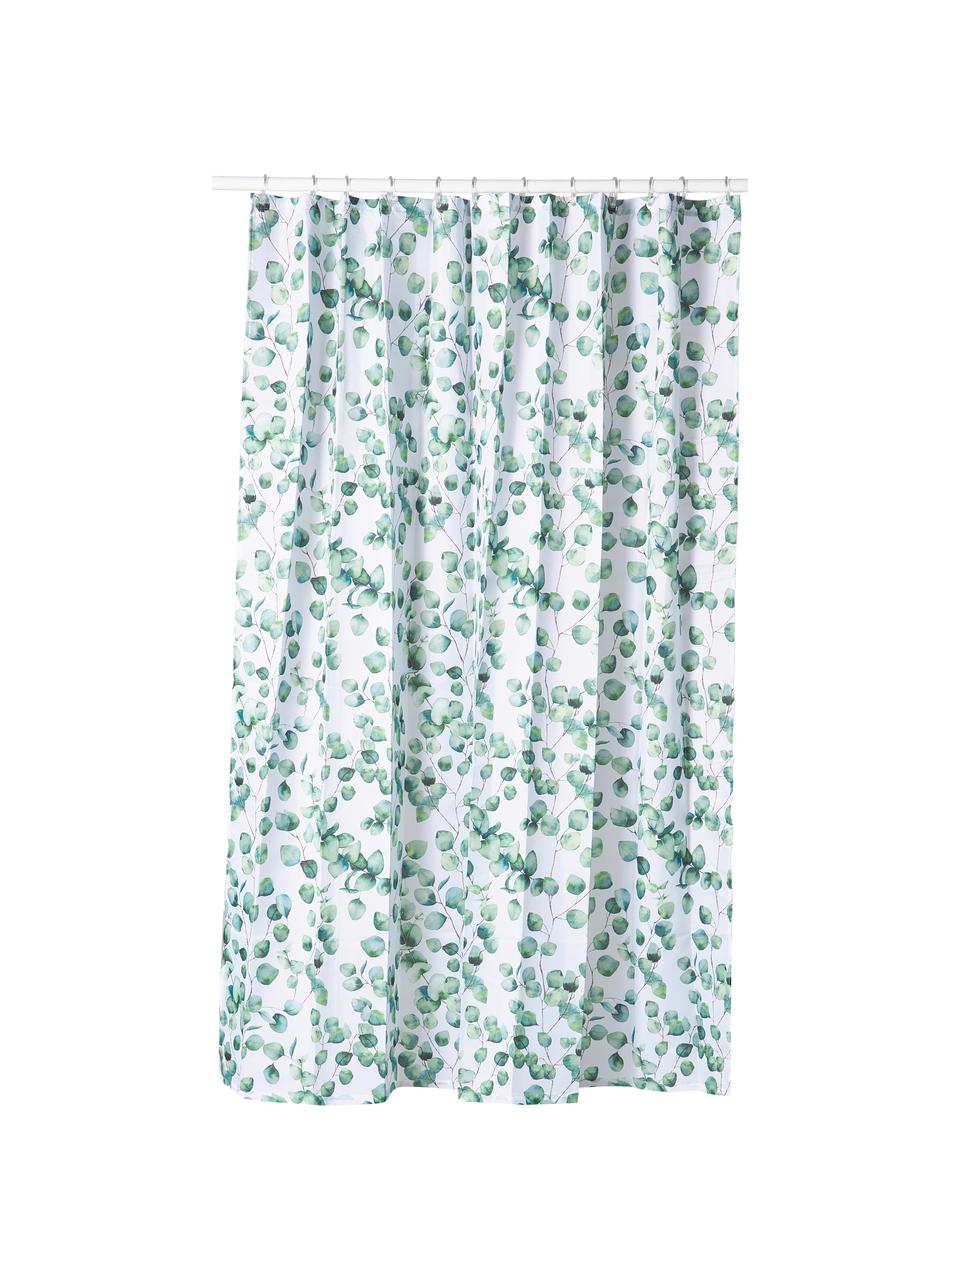 Duschvorhang Ayra mit Pflanzen-Muster, 100% Polyester, Grün, Weiß, B 180 x L 200 cm